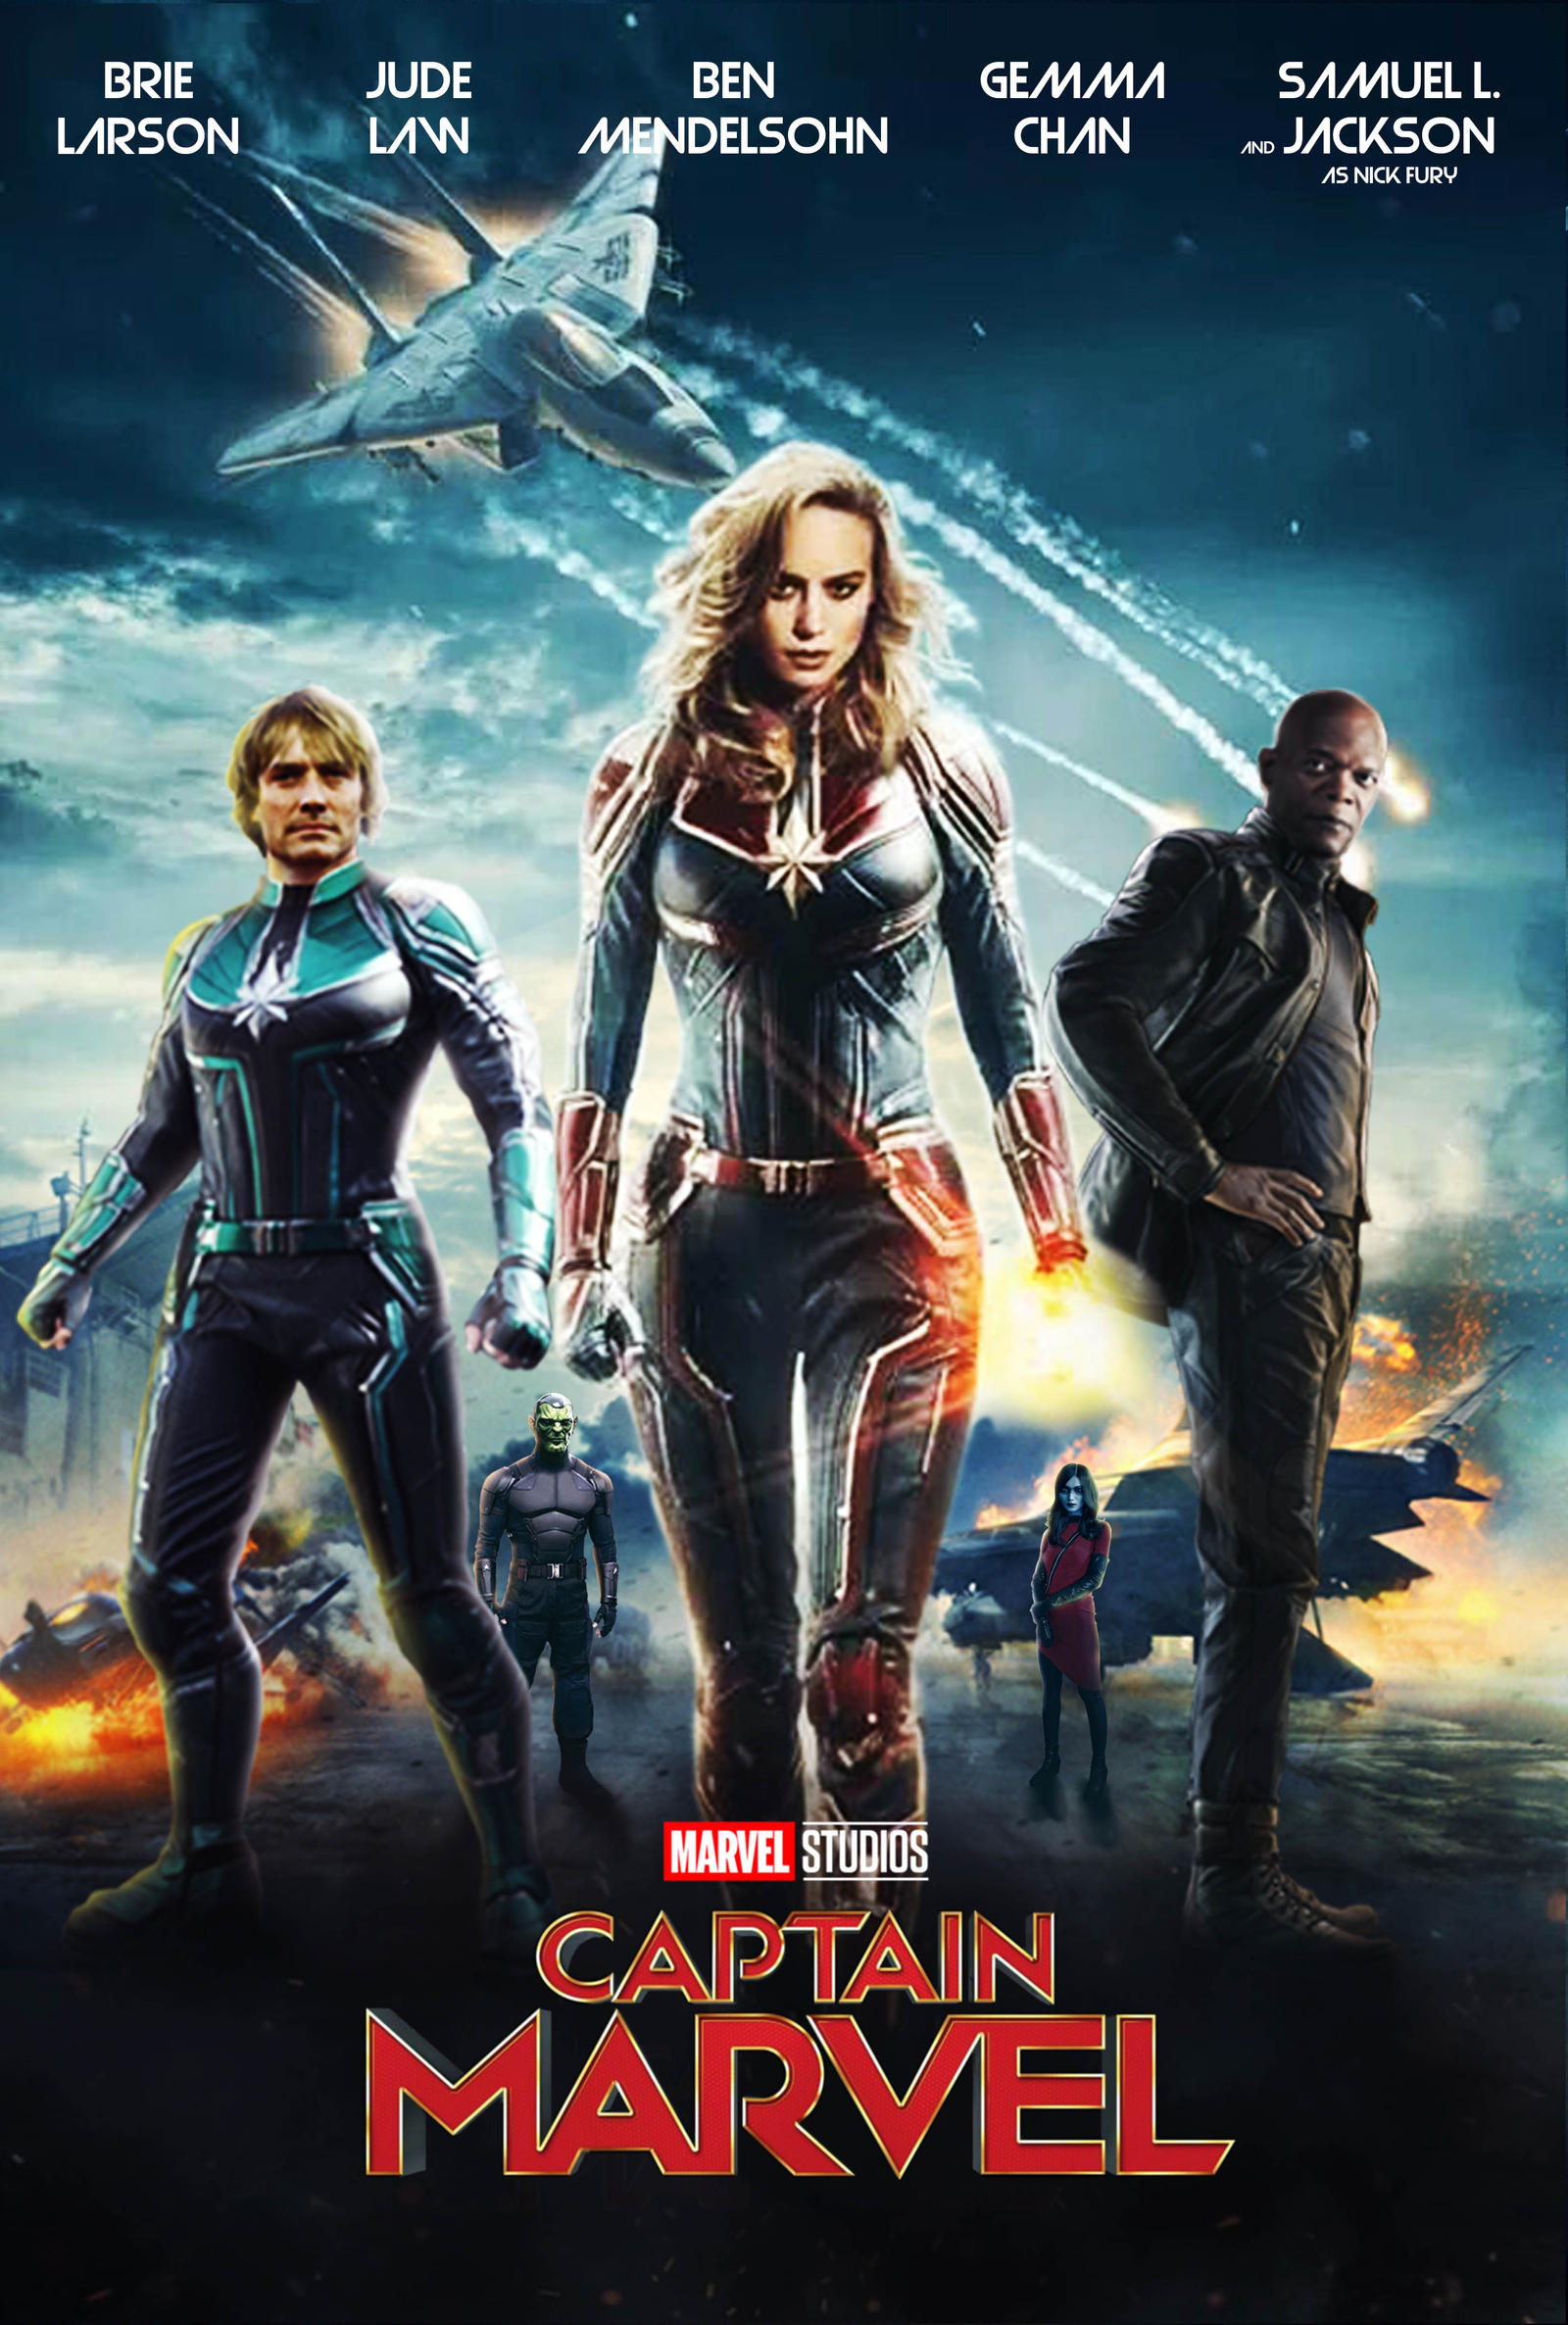 Captain Marvel Movie Poster by MarcellSalek26 on DeviantArt